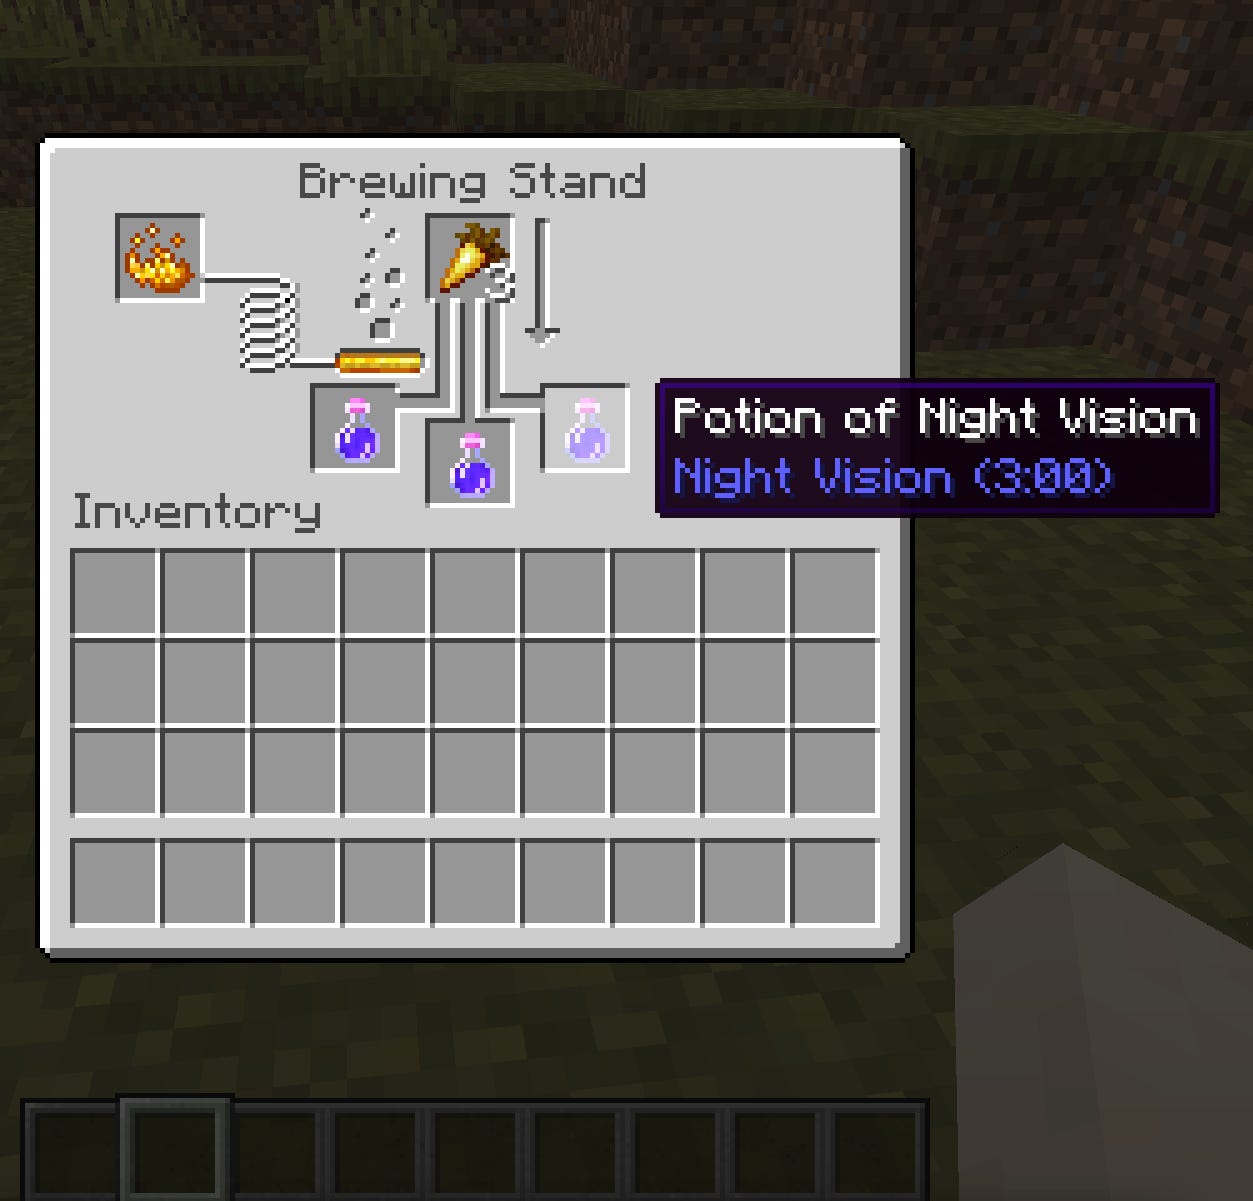 La schermata della preparazione delle pozioni in Minecraft. È in corso la creazione di una pozione di visione notturna.